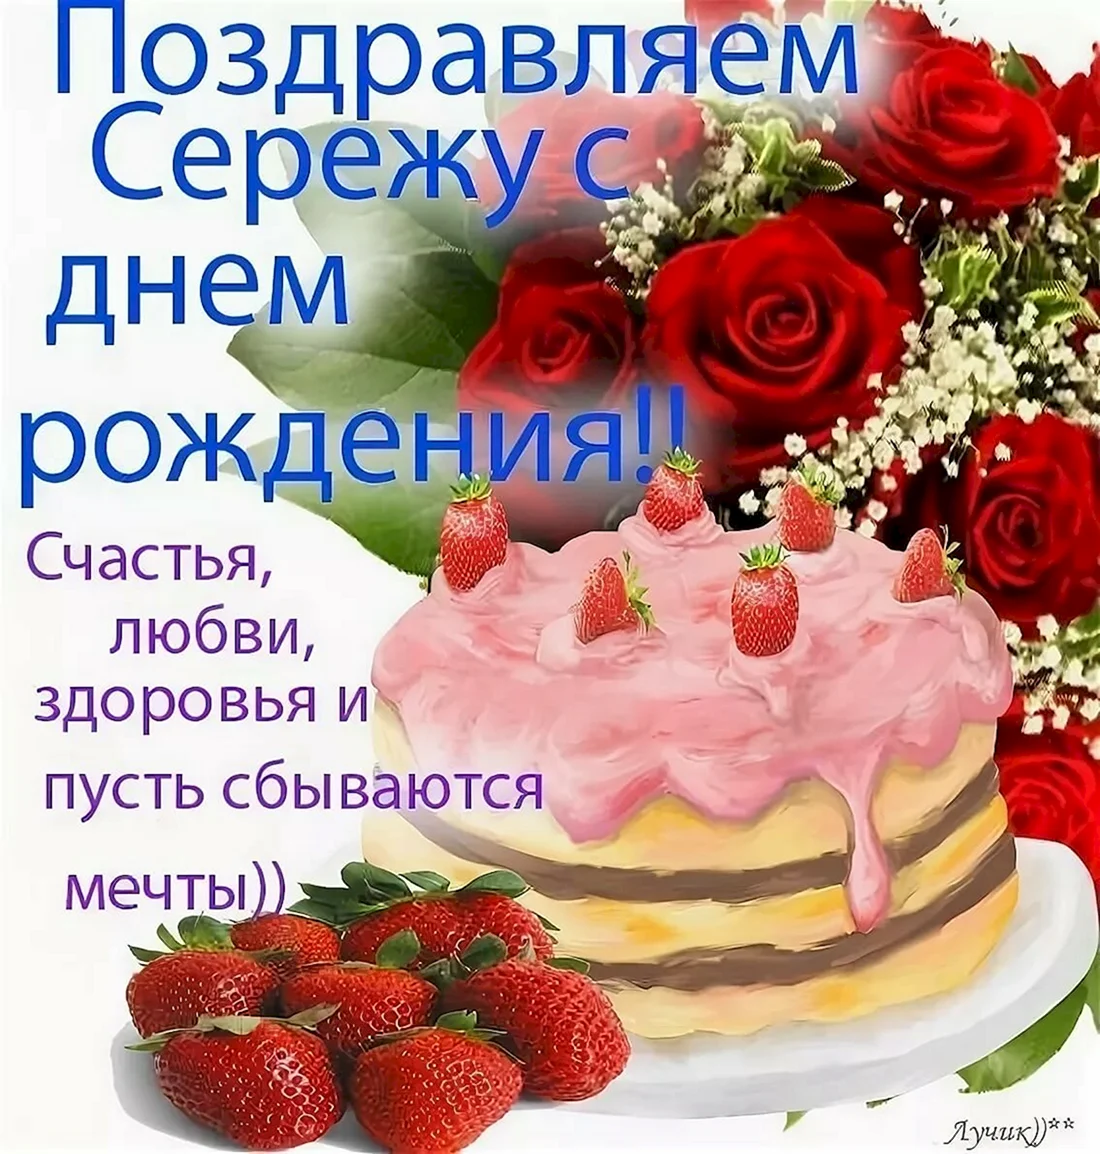 Поздравление коллеге пекарю с днем рождения